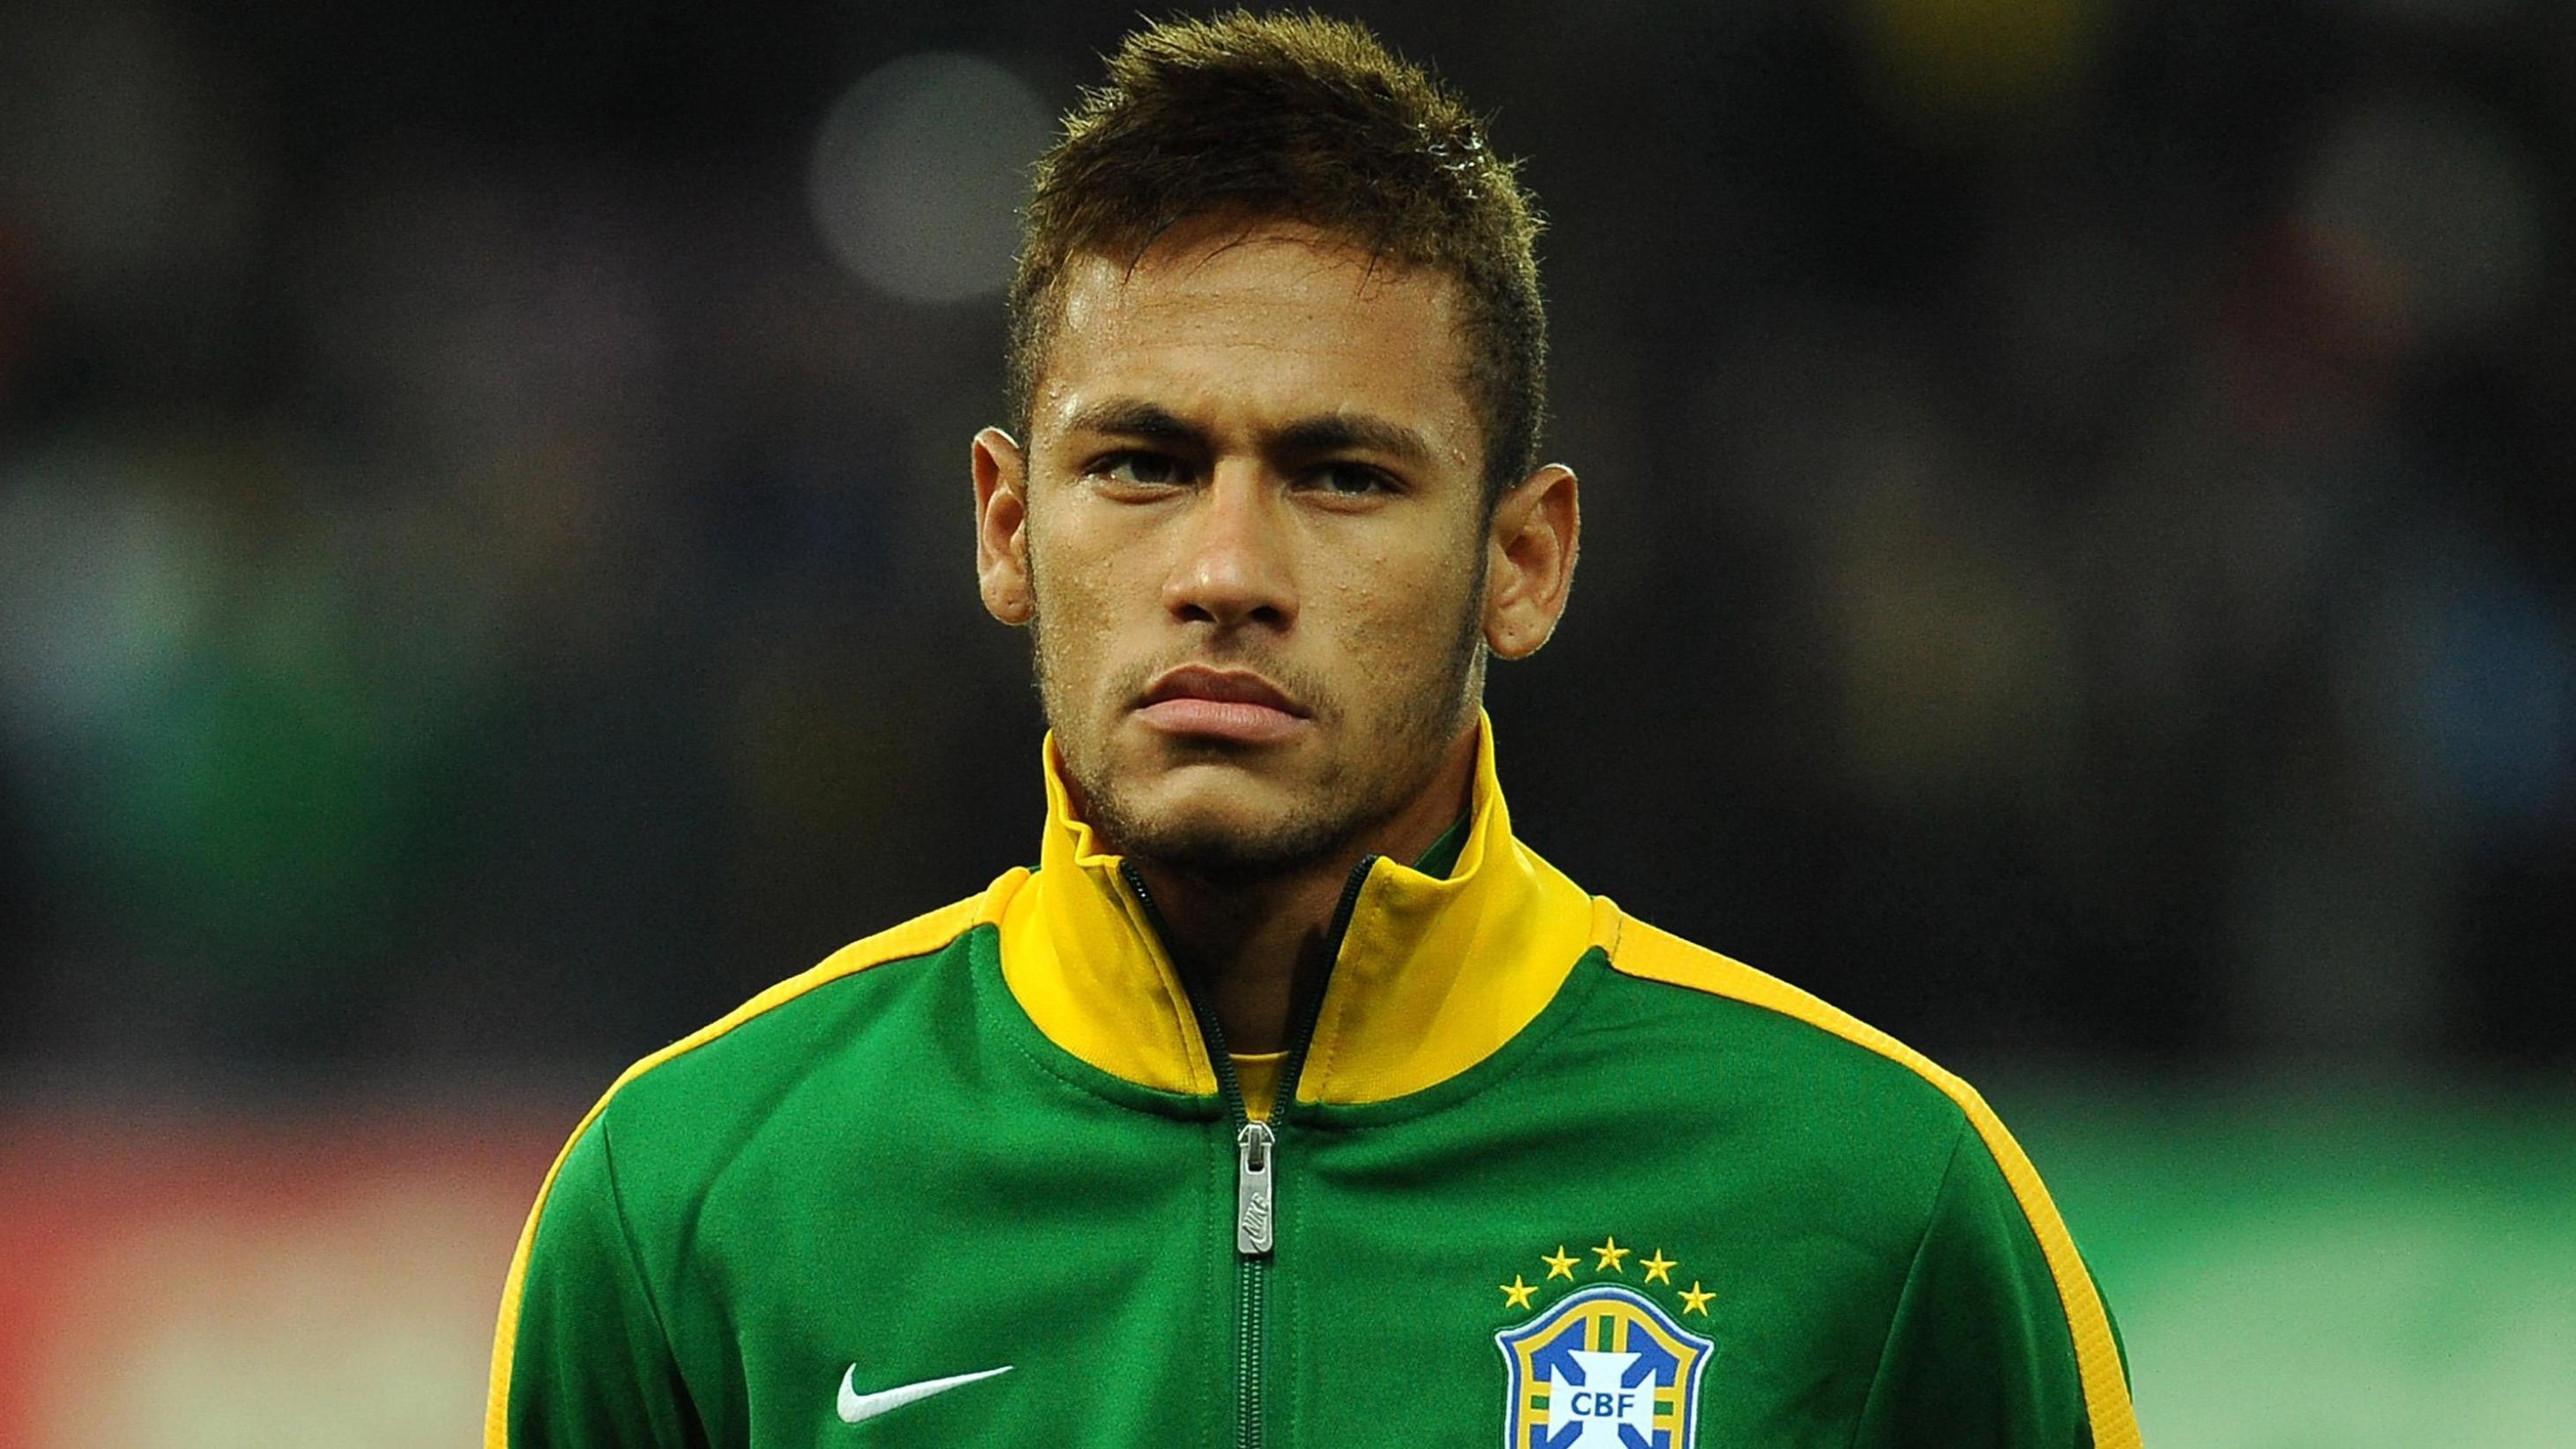 Neymar Brazil 2014 FIFA World Cup Wallpaper Free Download. walpic